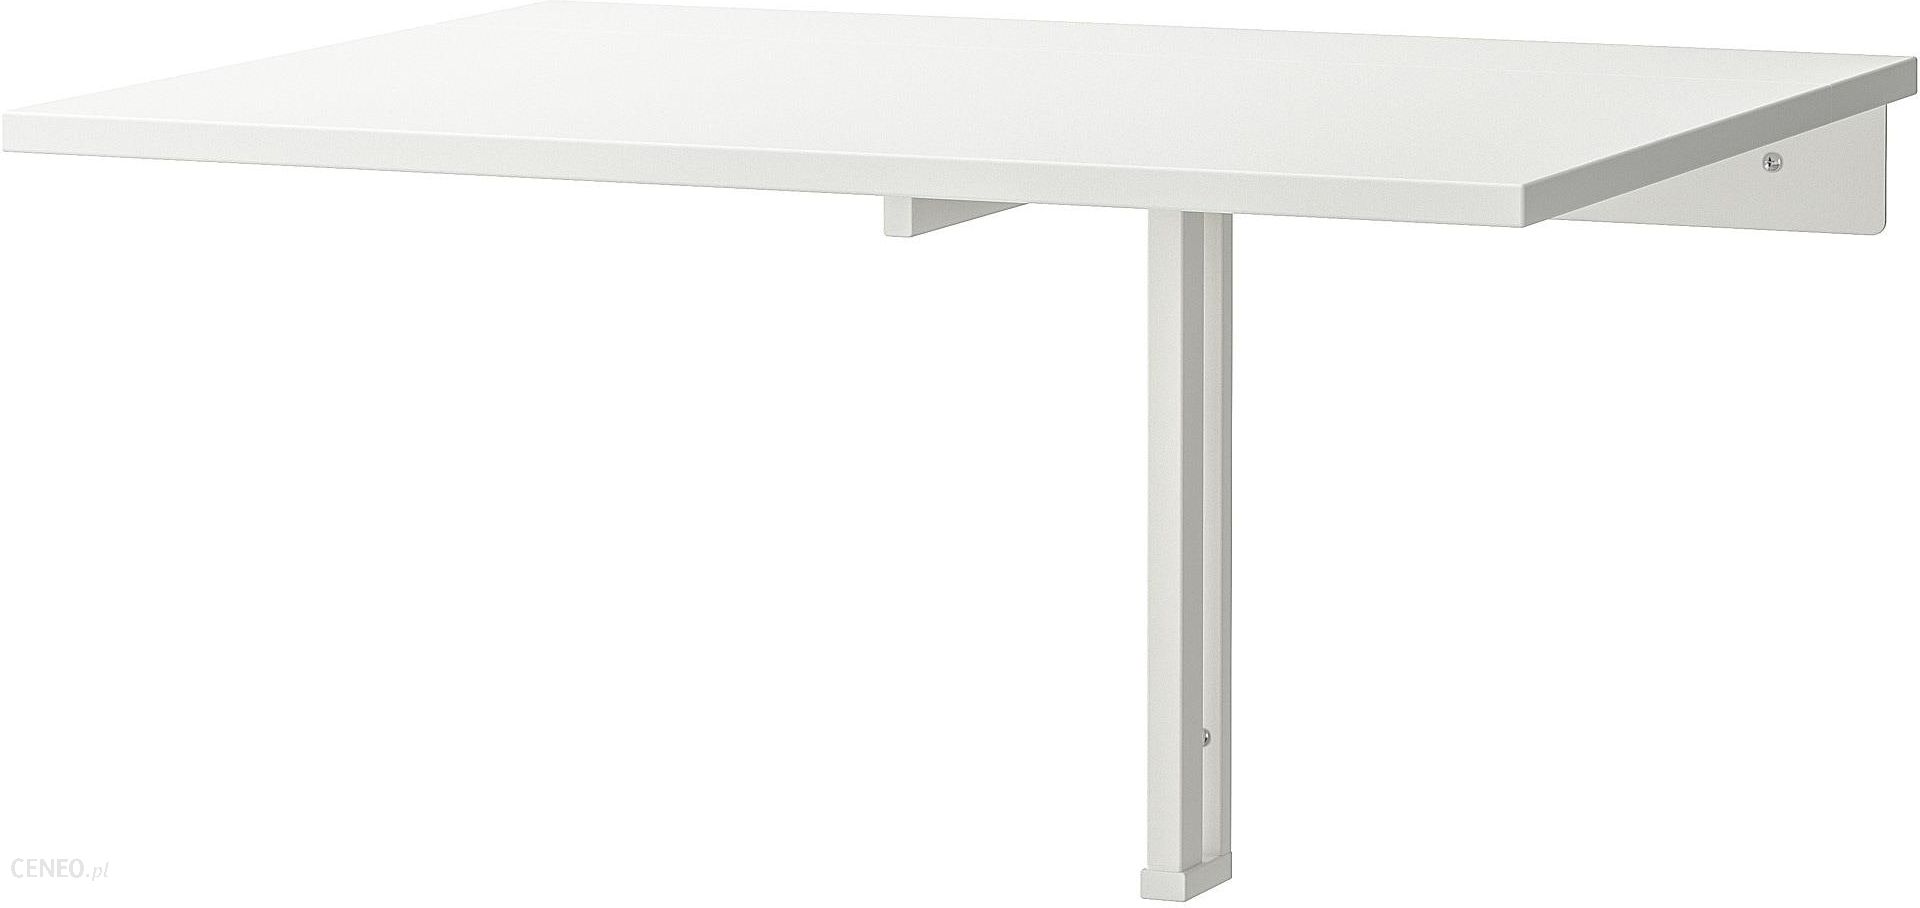 Норберг стол откидной стенного крепежа, белый, 74x60 см 2 999 ₽